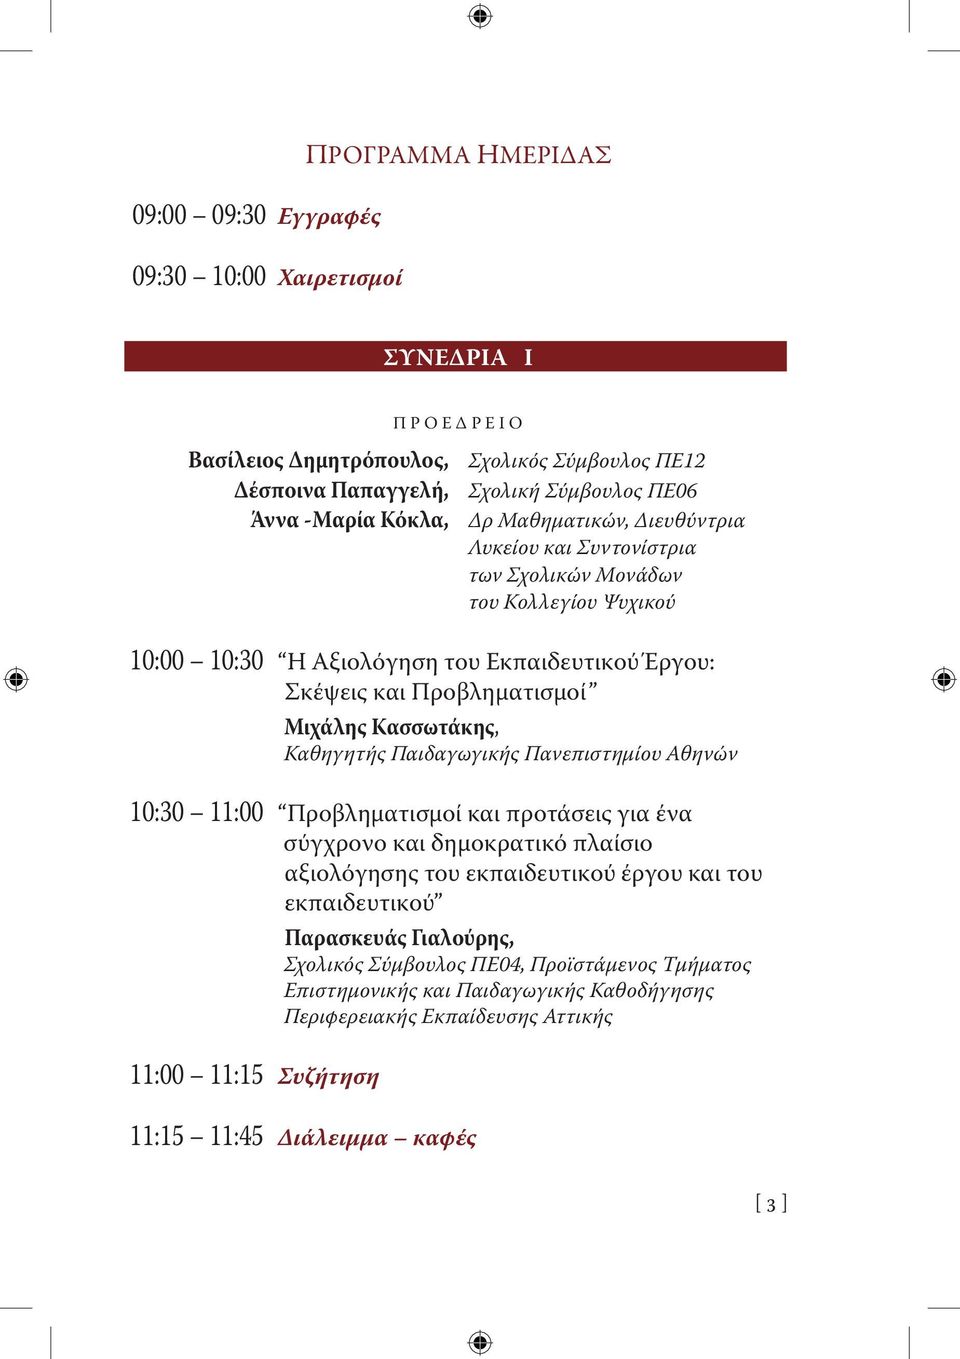 Κασσωτάκης, Καθηγητής Παιδαγωγικής Πανεπιστημίου Αθηνών 10:30 11:00 Προβληματισμοί και προτάσεις για ένα σύγχρονο και δημοκρατικό πλαίσιο αξιολόγησης του εκπαιδευτικού έργου και του